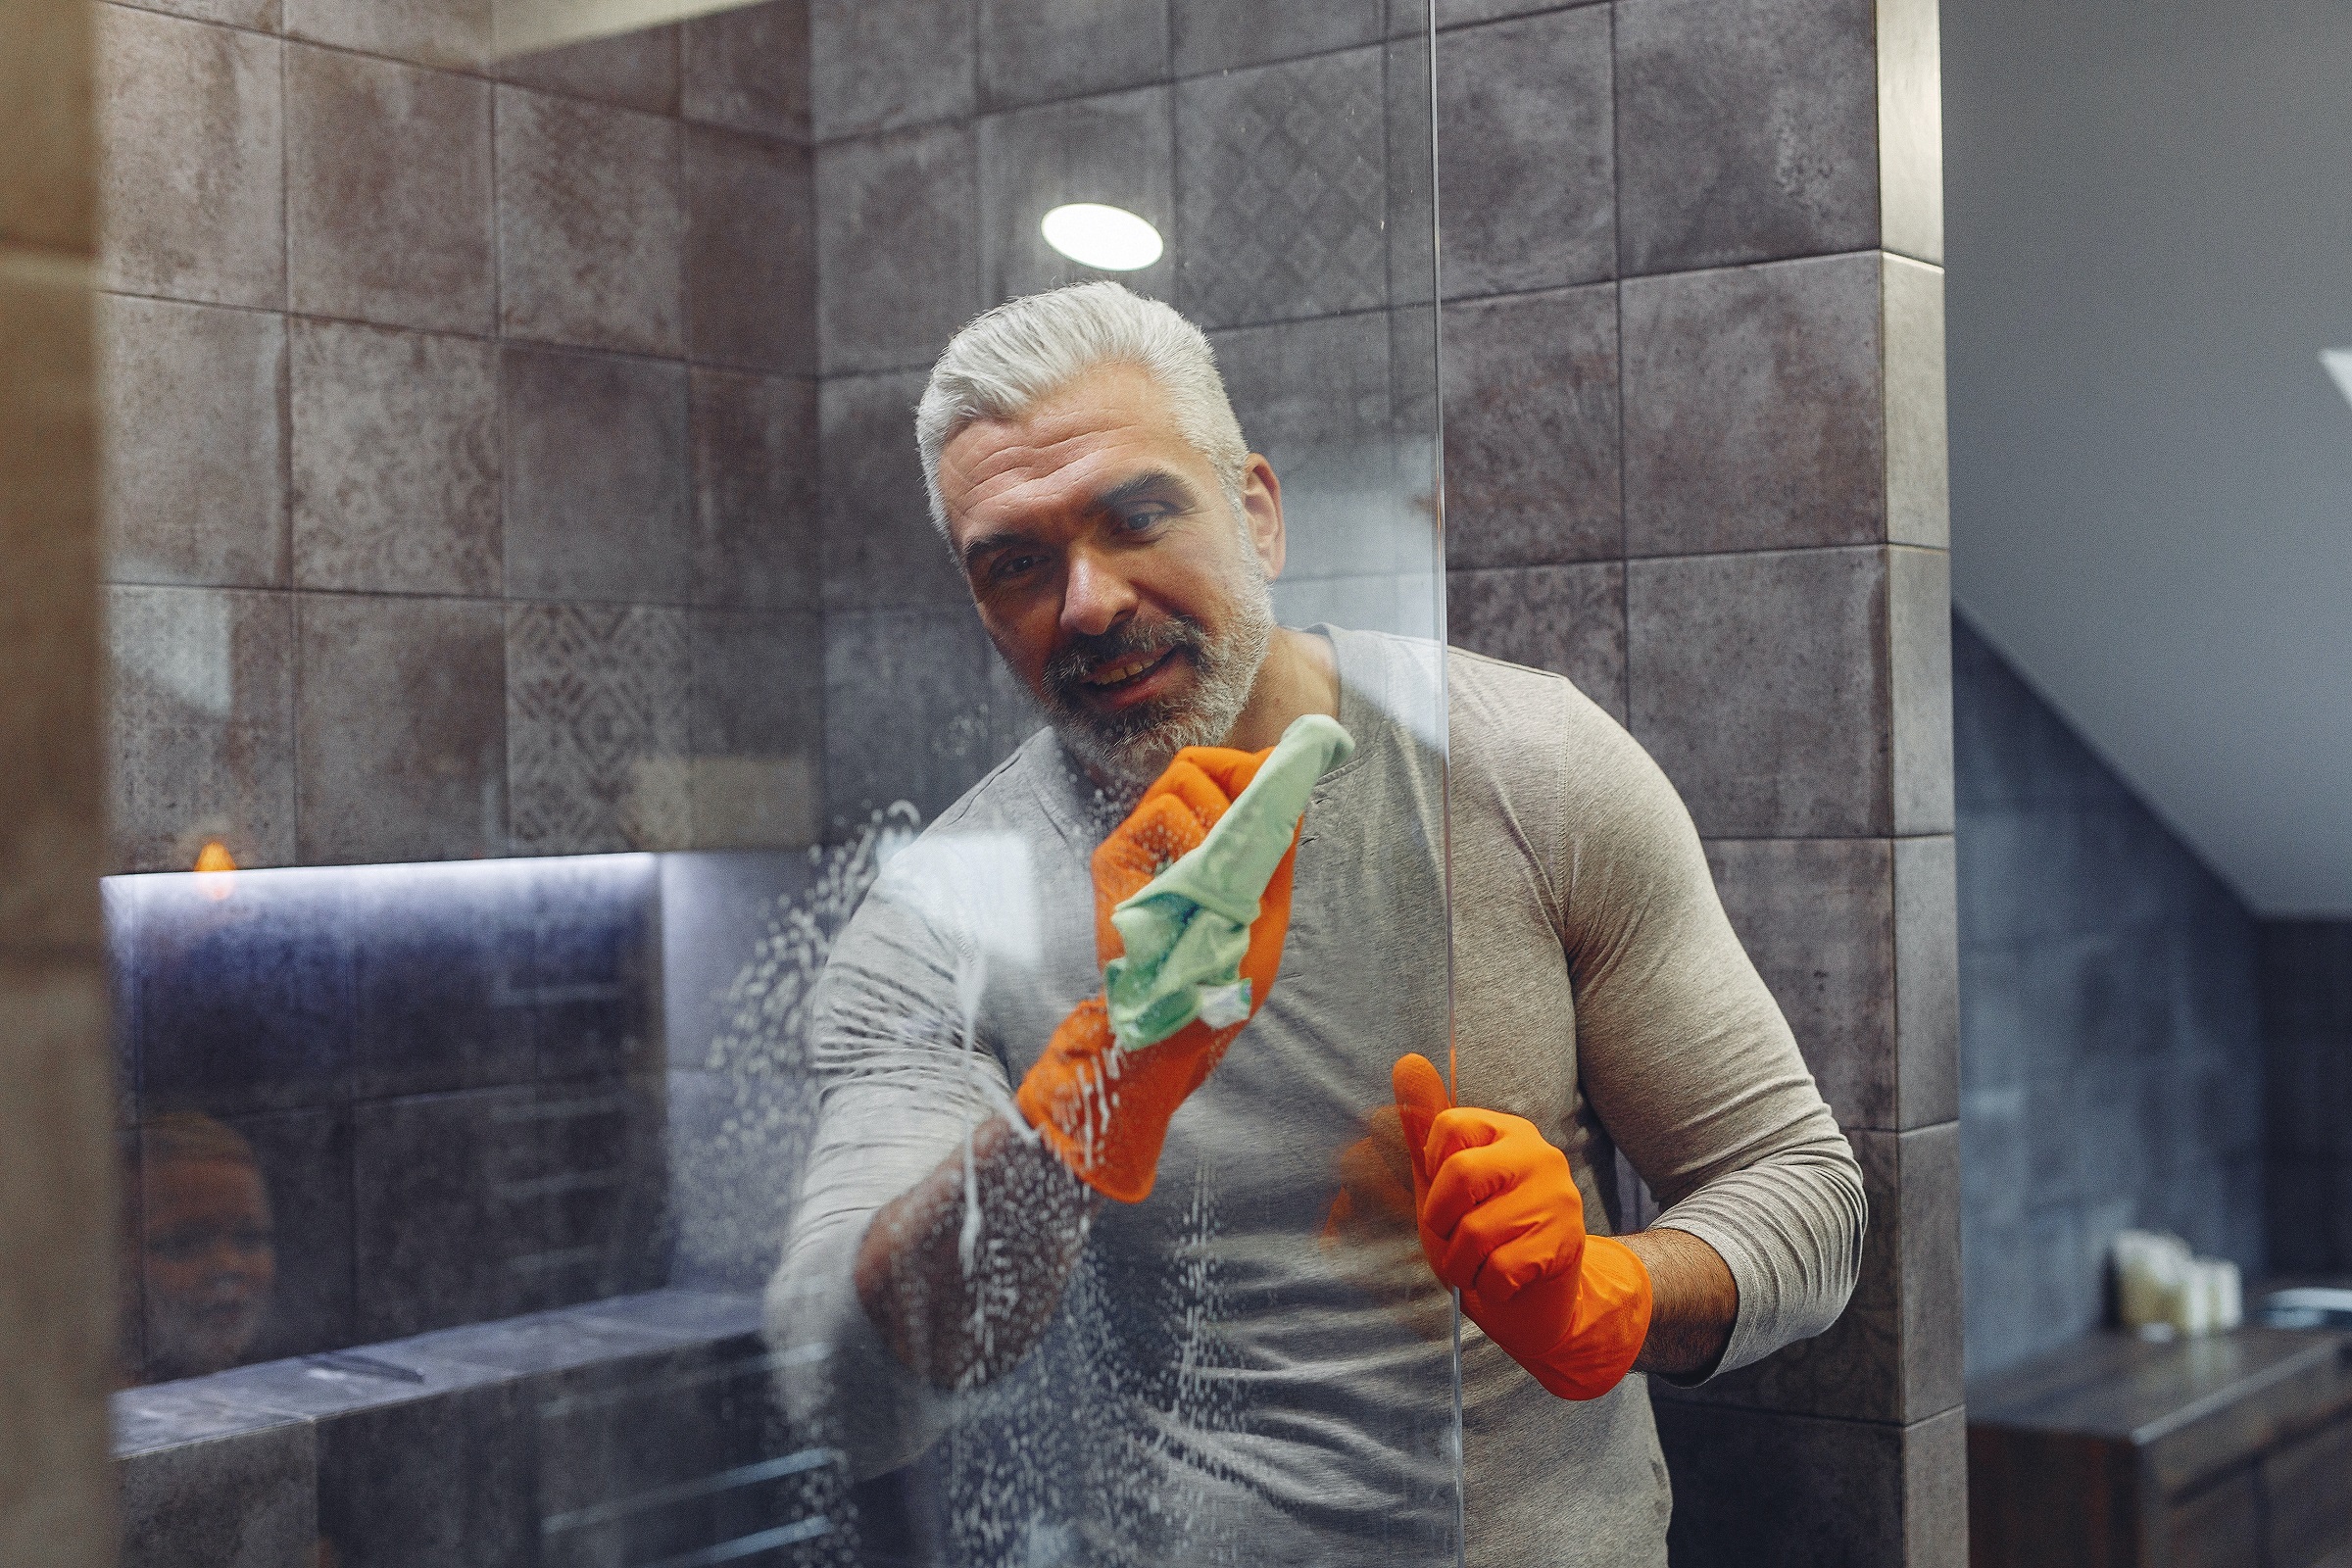 DIY Shower Cleaner - Homemade Shower Cleaner - Pexels Gustavo Fring